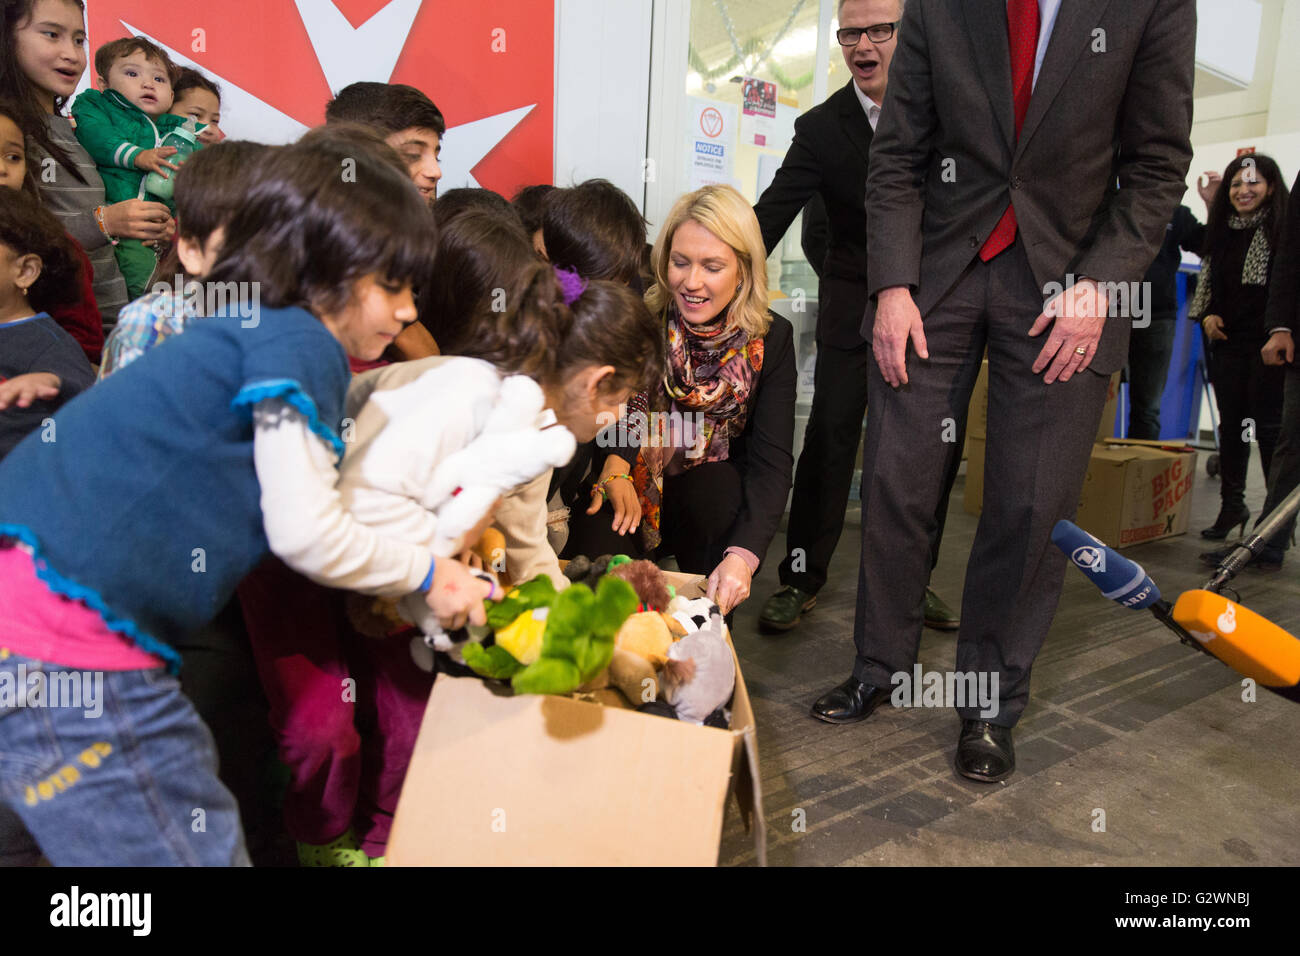 08.12.2015, Berlin, Berlin, Germania - Ministro della famiglia Manuela Schwesig (SPD) visitata presso il centro congressi di un ricovero per i rifugiati. In gestito da Malteser proprietà, circa 1.000 rifugiati registrati sono alloggiati, la maggior parte delle loro famiglie. Qui nella distribuzione di giocattoli morbidi per i 130 bambini presso l'albergo. 0DB151208D019CAROEX.JPG - non per la vendita in G E R M A N Y, A U S T R I A, S W I T Z e R L A N D [modello di rilascio: NO, la proprietà di rilascio: NO, (c) caro agenzia fotografica / Bleicker, http://www.caro-images.com, info@carofoto.pl - Qualsiasi uso di questa immagine è soggetto a royalty!] Foto Stock